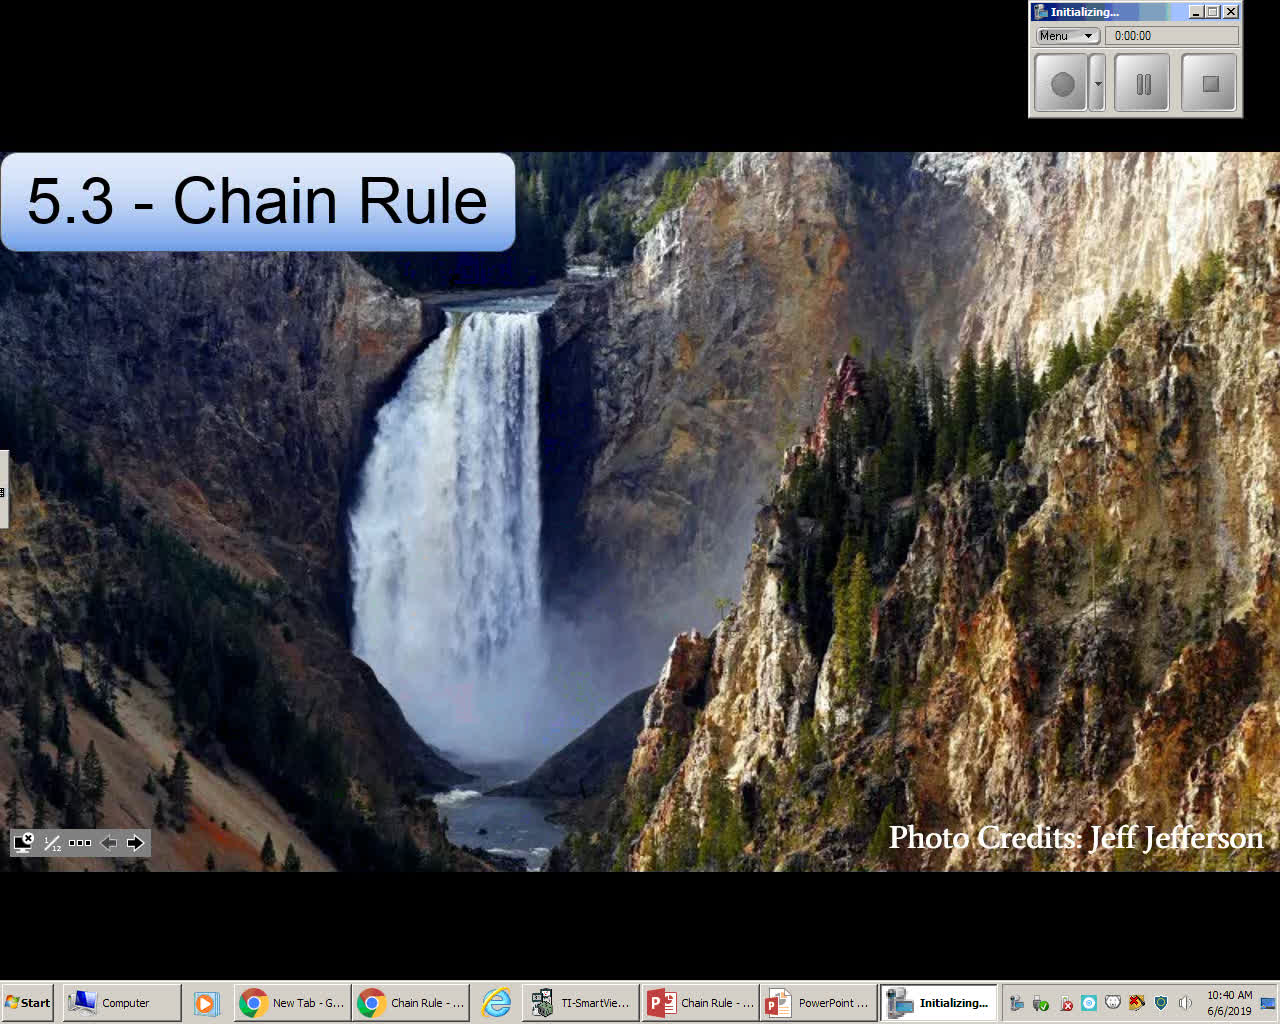 Chain Rule